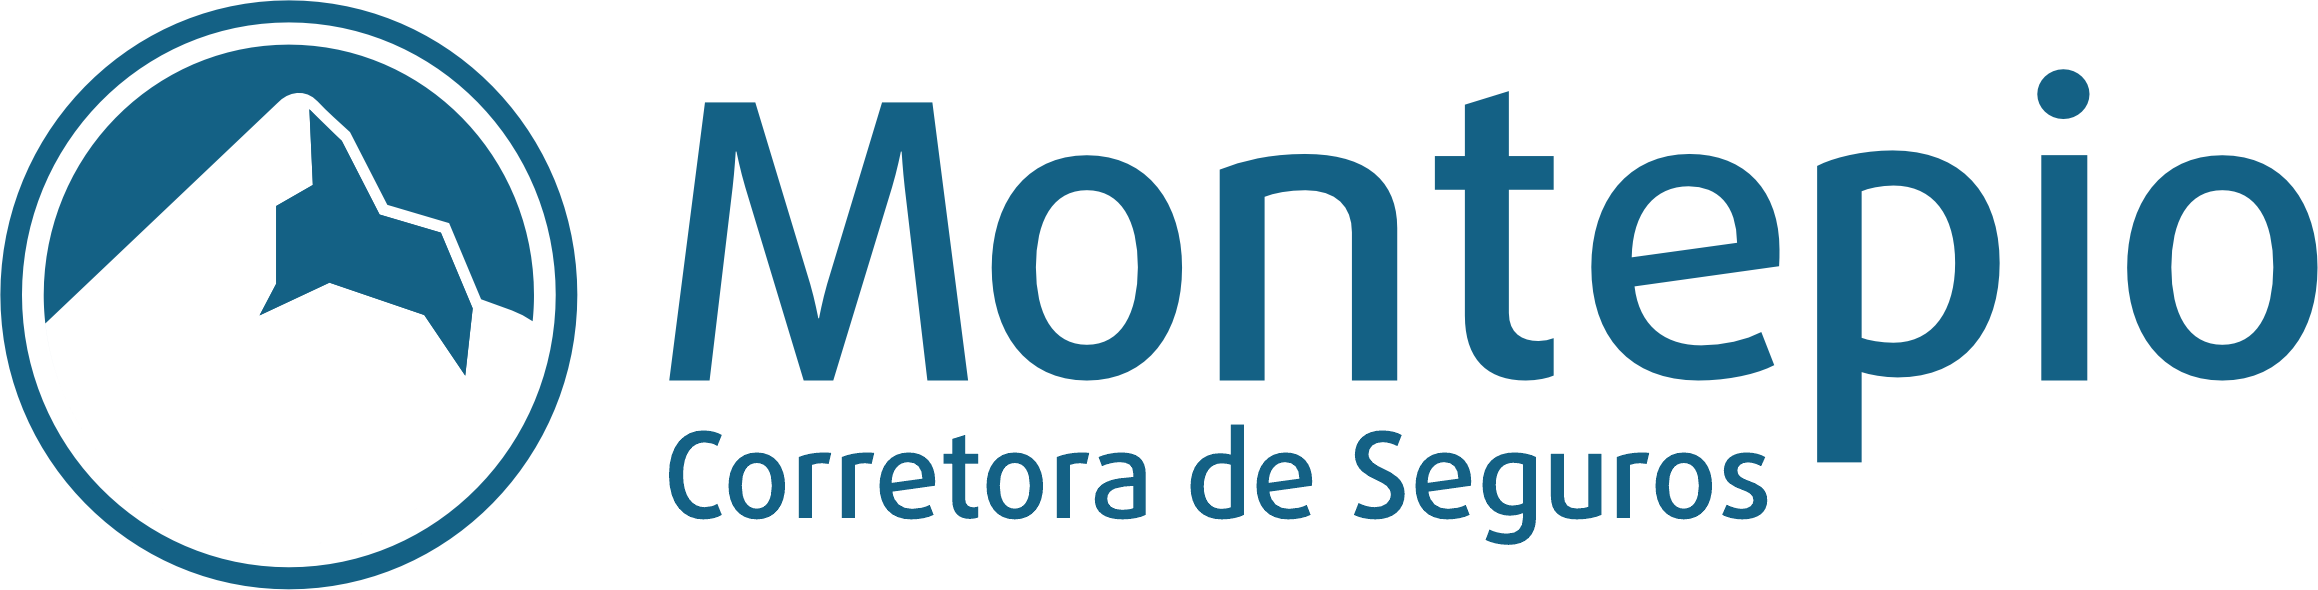 Montepio Corretora de Seguros – Seguros, Finanças e Benefícios.